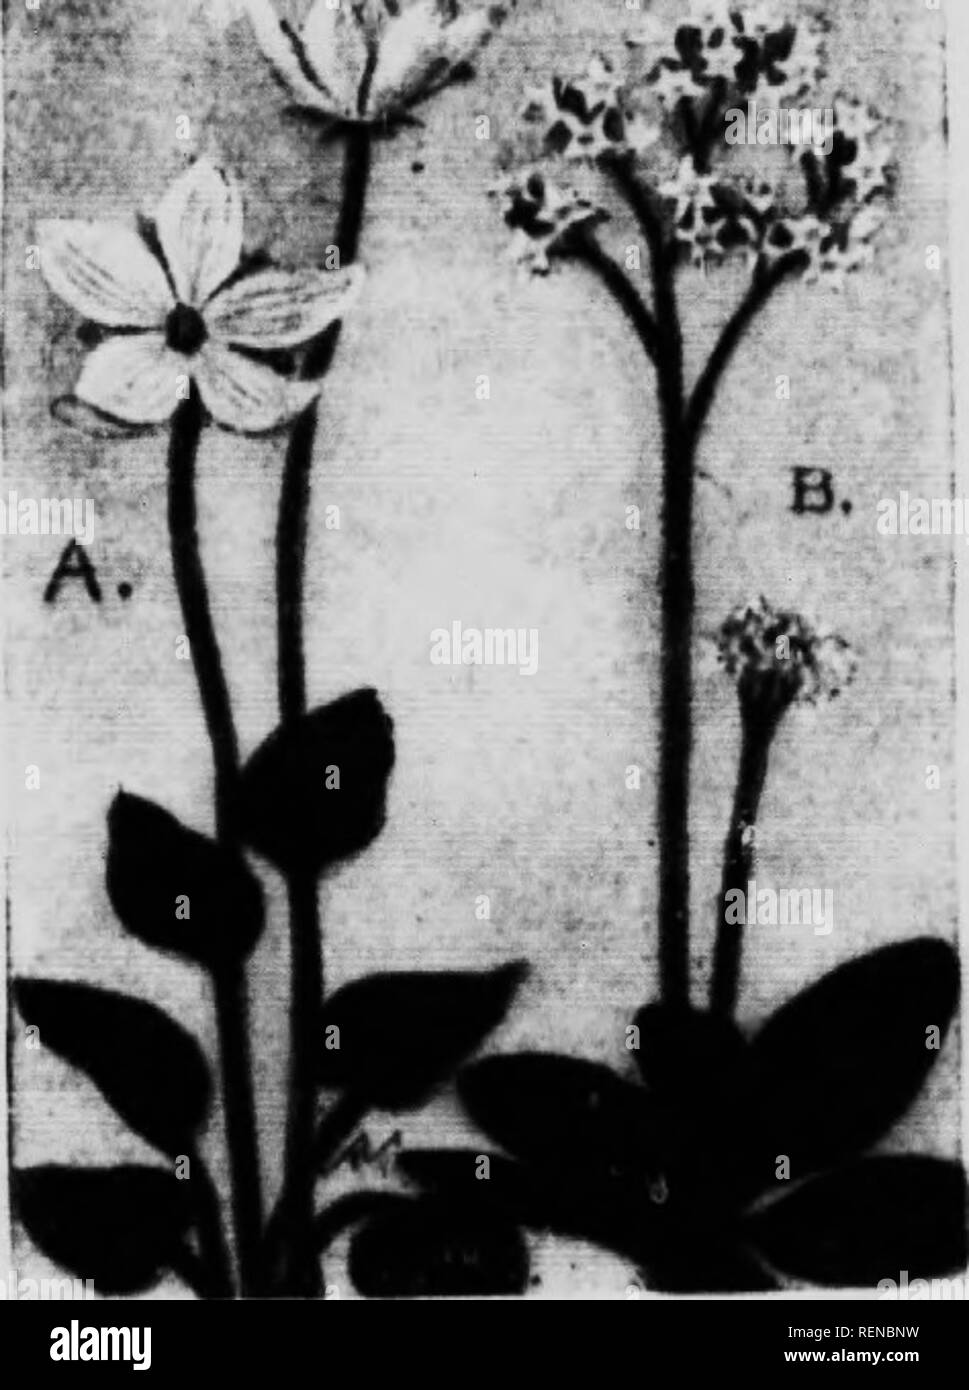 . Blume [microform]: Wilde Blumen östlich der Rocky Mountains. Blumen; Fleurs; Botanique; Botanik. Steinbrech FAMILIE (Ndji/iiii/'"''"') () Gramm ok 1' arnassis [I'nnmssia Va, Jniiunn) n Ein im-ttv wenig MWiuiii) oder giowniK tioiii iiinidow Anlage H zu 24 iMcl" - "l. ijsl.. Die llowrs Kunst - Eine. lelioite ci-AII.y weiß, tiiielv veiiUHl mit jireeiiish. aii.l iK. Nie-Mn^' ly auf loiiL" seaiH.;: ein Hiiigle. heait-. liai. eove. t "l. ase. Die hasal Blätter sind loiis, 'tteiiime (l, eher tliiek Ami eoarae in Tex- tur, glatte edjjed Ami hluntly wies Wir diesen Sm "Cies in hh liiid.. m. aus der hitter Teil Stockfoto